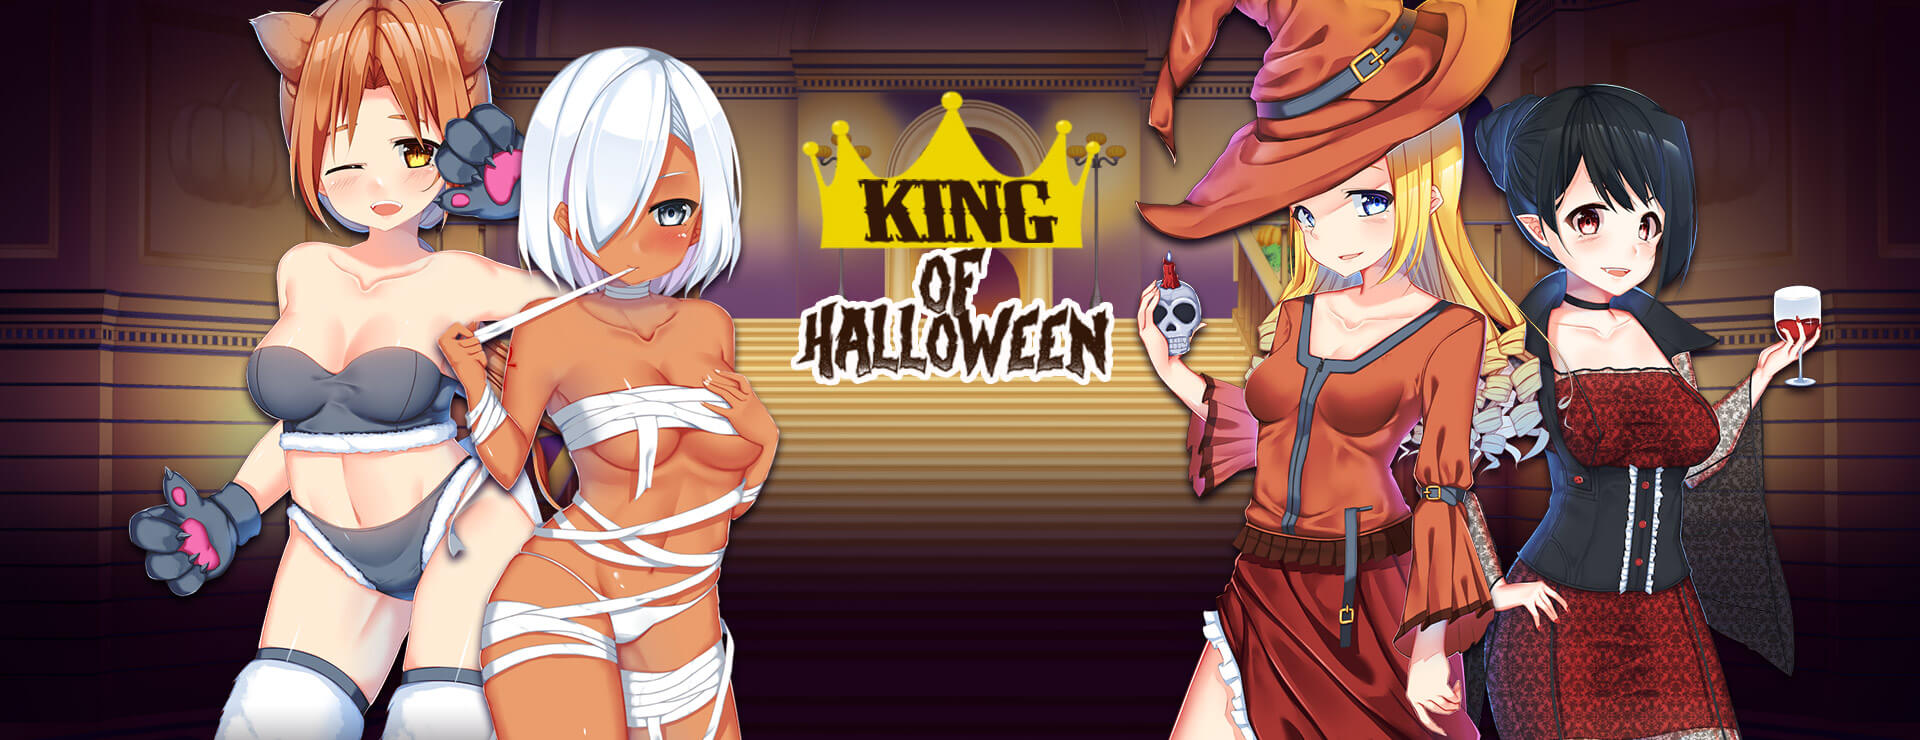 King of Halloween - Visual Novel Game